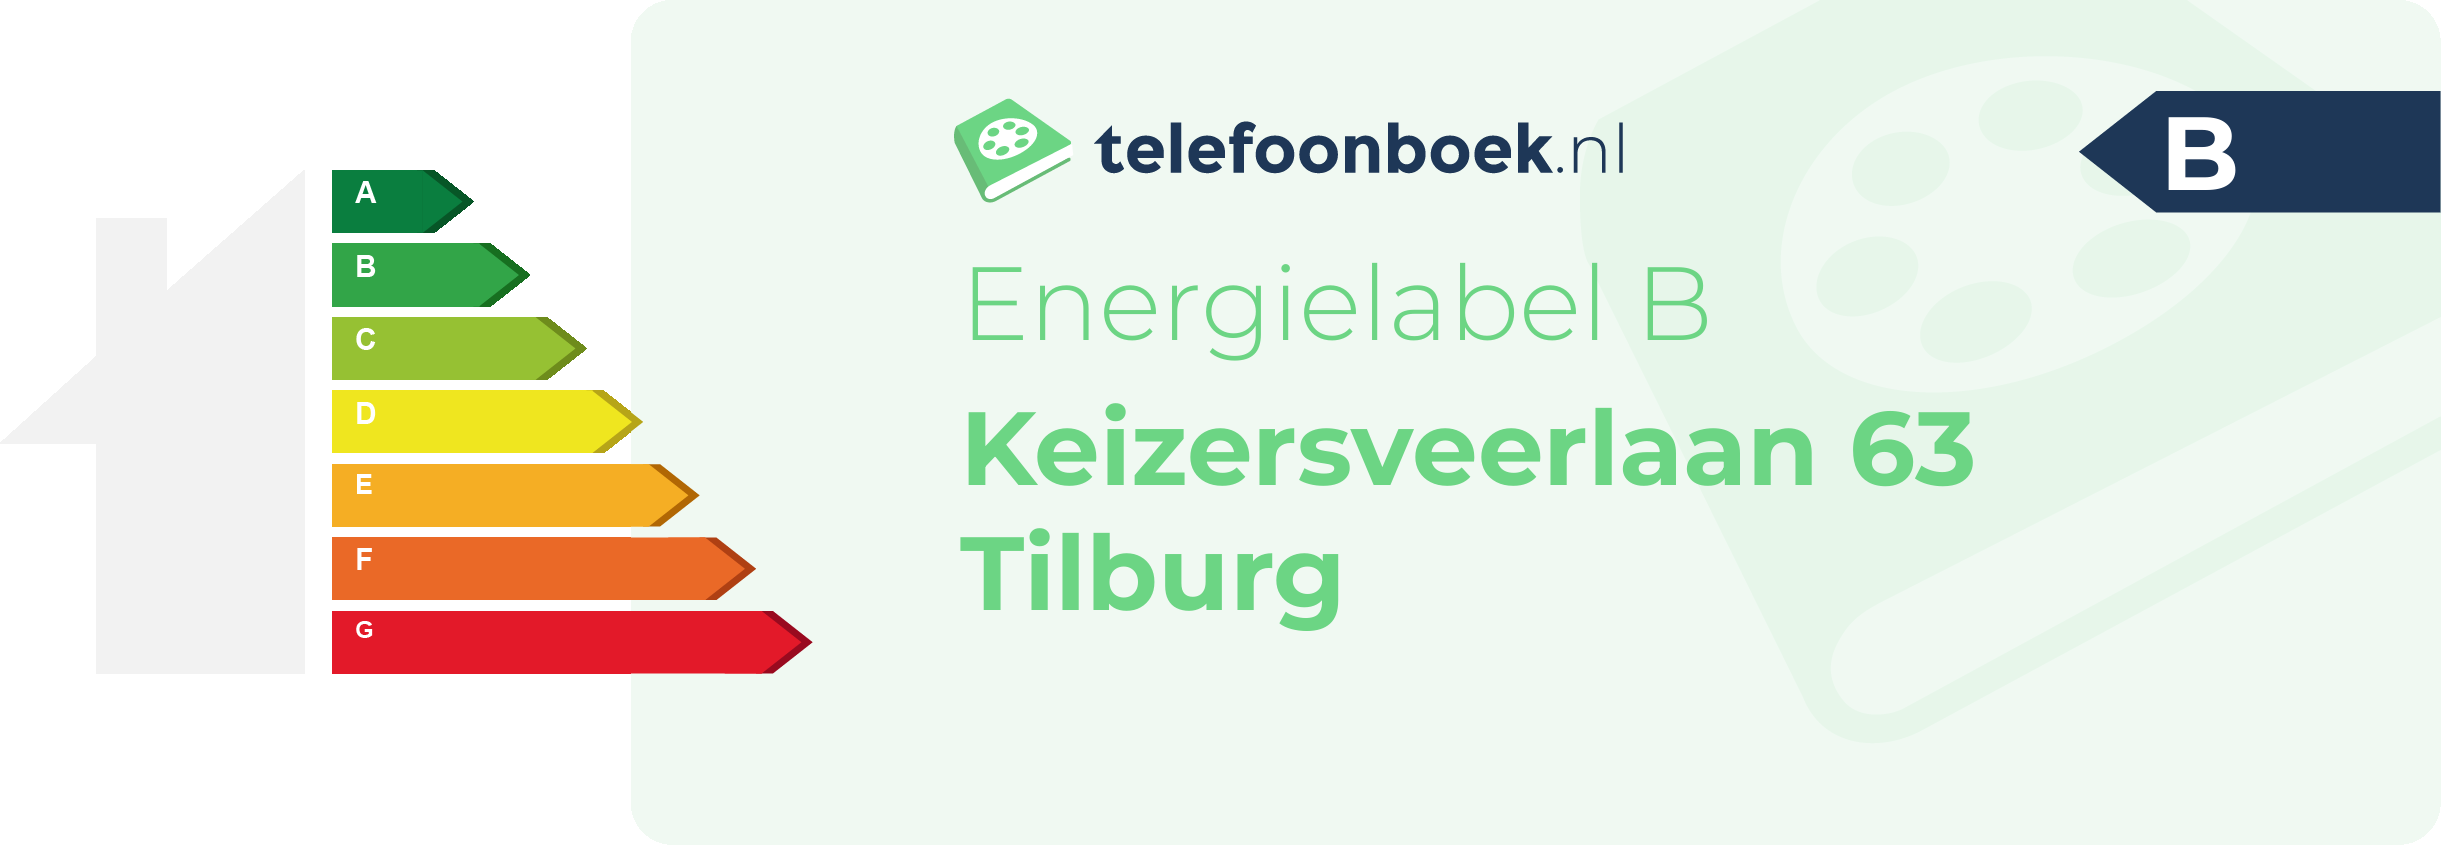 Energielabel Keizersveerlaan 63 Tilburg